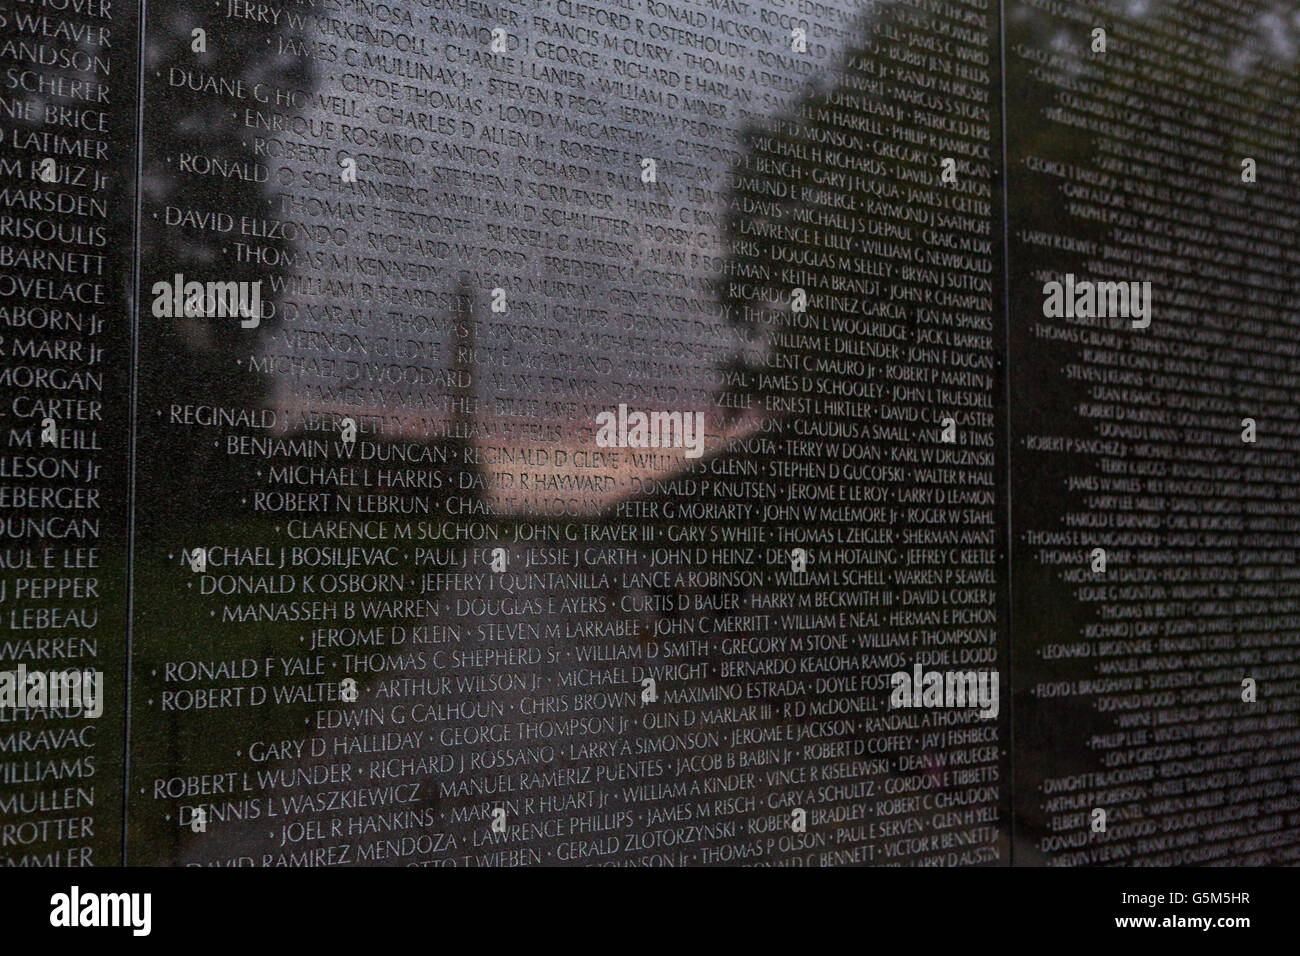 Al atardecer y el Monumento a Washington se refleja en los nombres grabados en el Vietnam Veterans Memorial Wall, en Washington, DC. Foto de stock